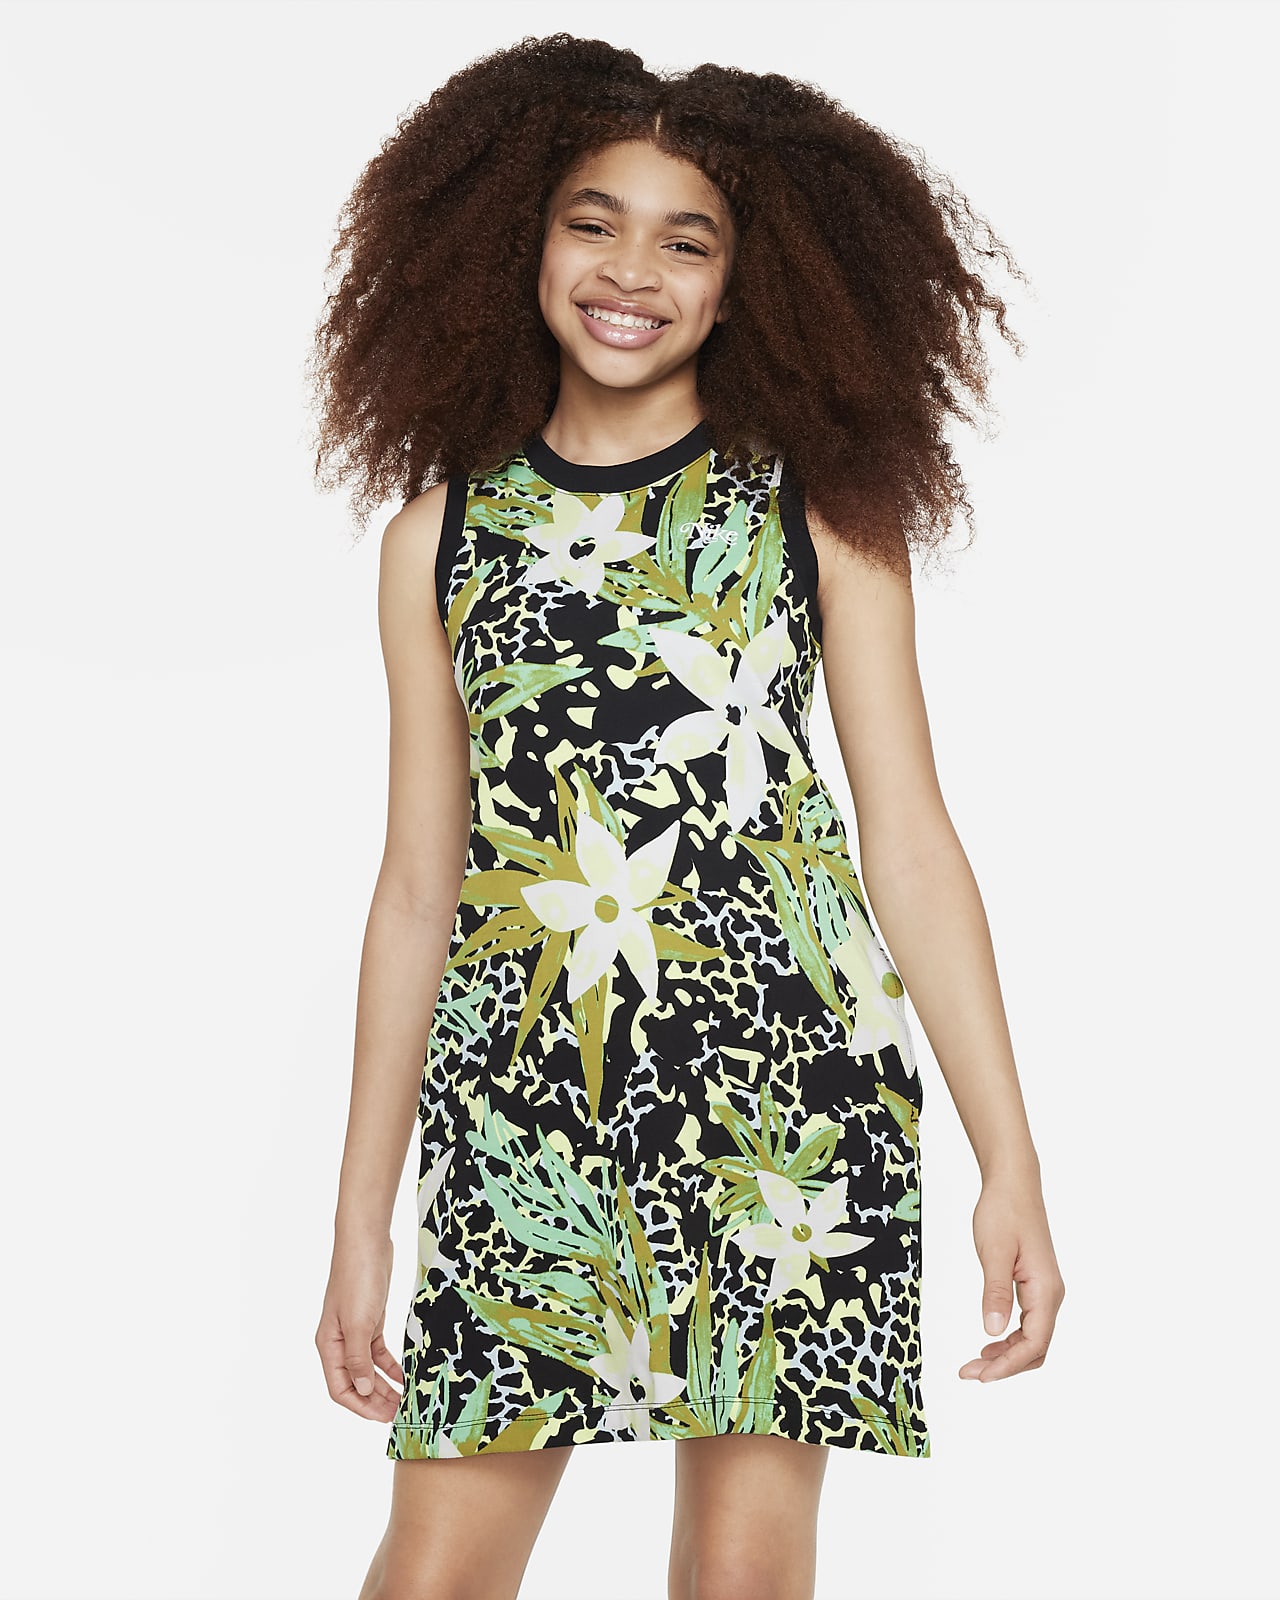 Nike Sportswear Older Kids' (Girls') Sleeveless Dress